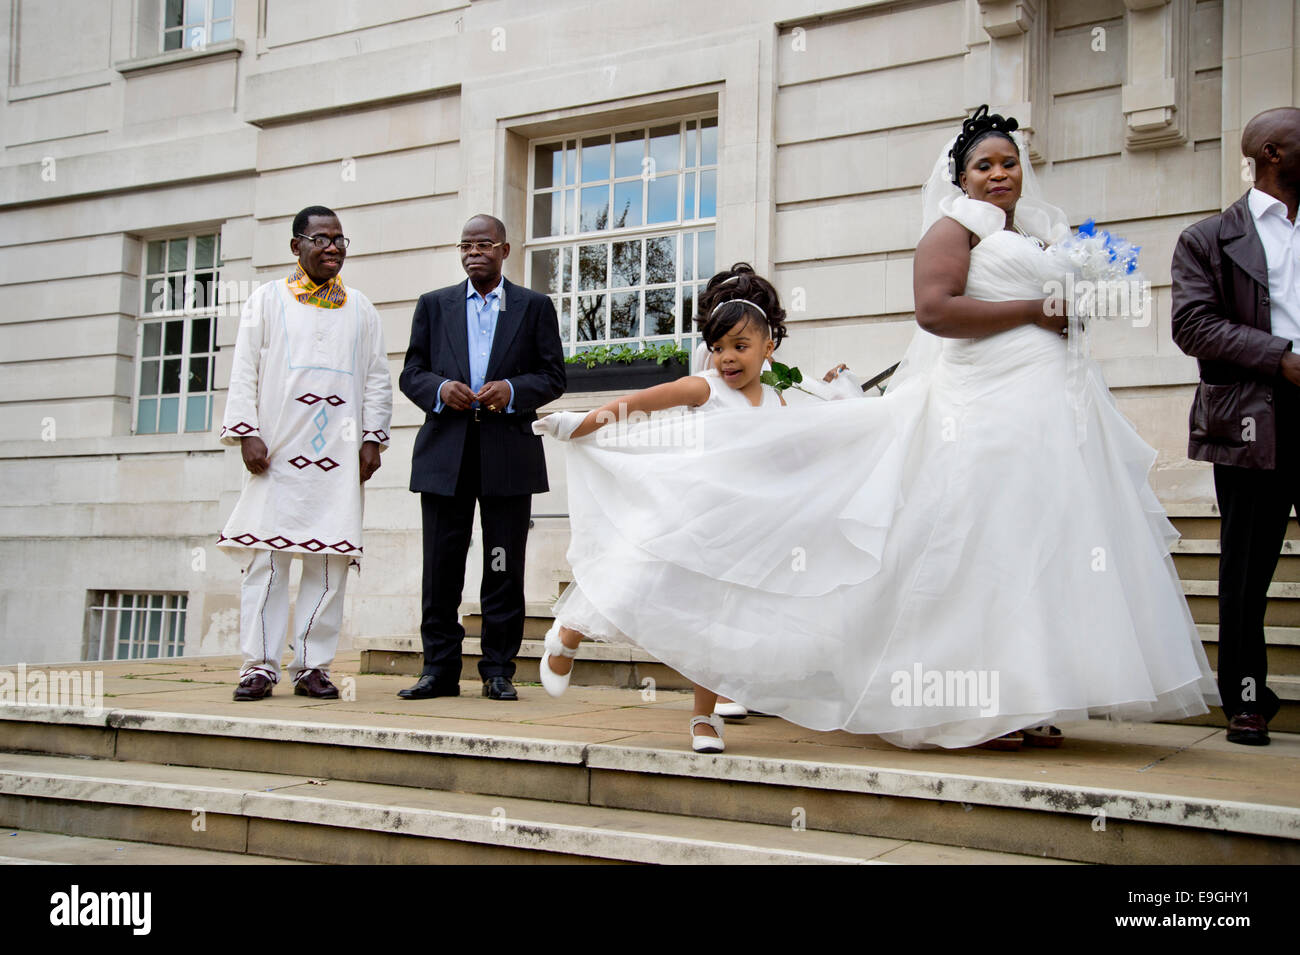 Hôtel de ville de Hackney. registry office mariage. Mariée vêtus de blanc sur le point d'entrer, avec de jeunes demoiselles tenant son train. Banque D'Images